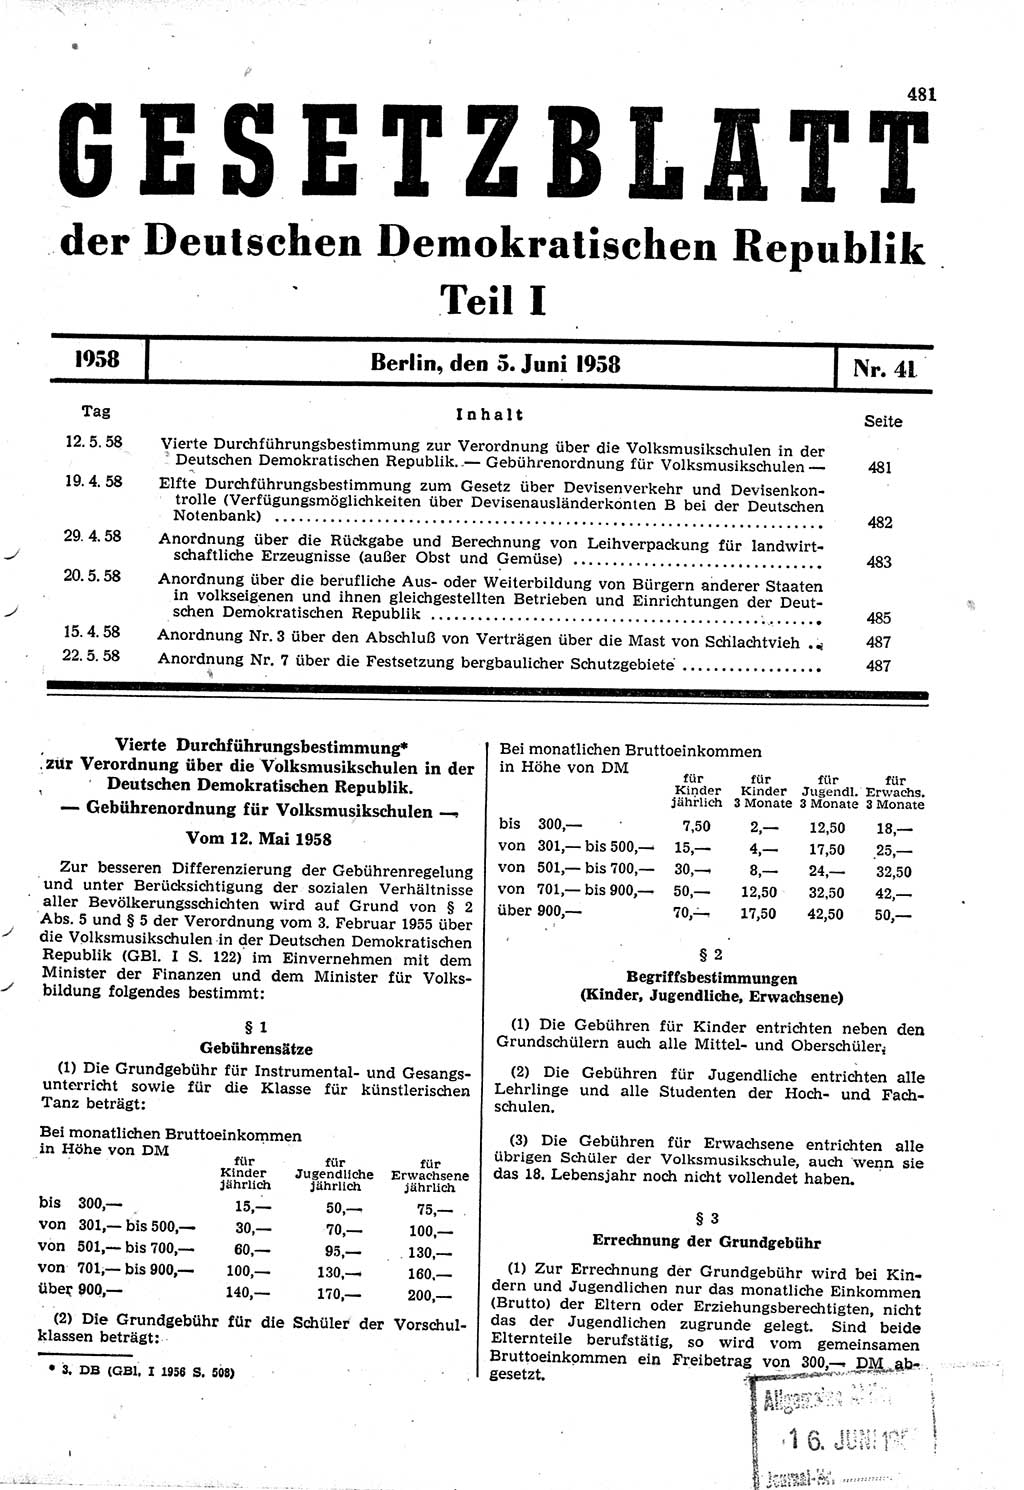 Gesetzblatt (GBl.) der Deutschen Demokratischen Republik (DDR) Teil Ⅰ 1958, Seite 481 (GBl. DDR Ⅰ 1958, S. 481)